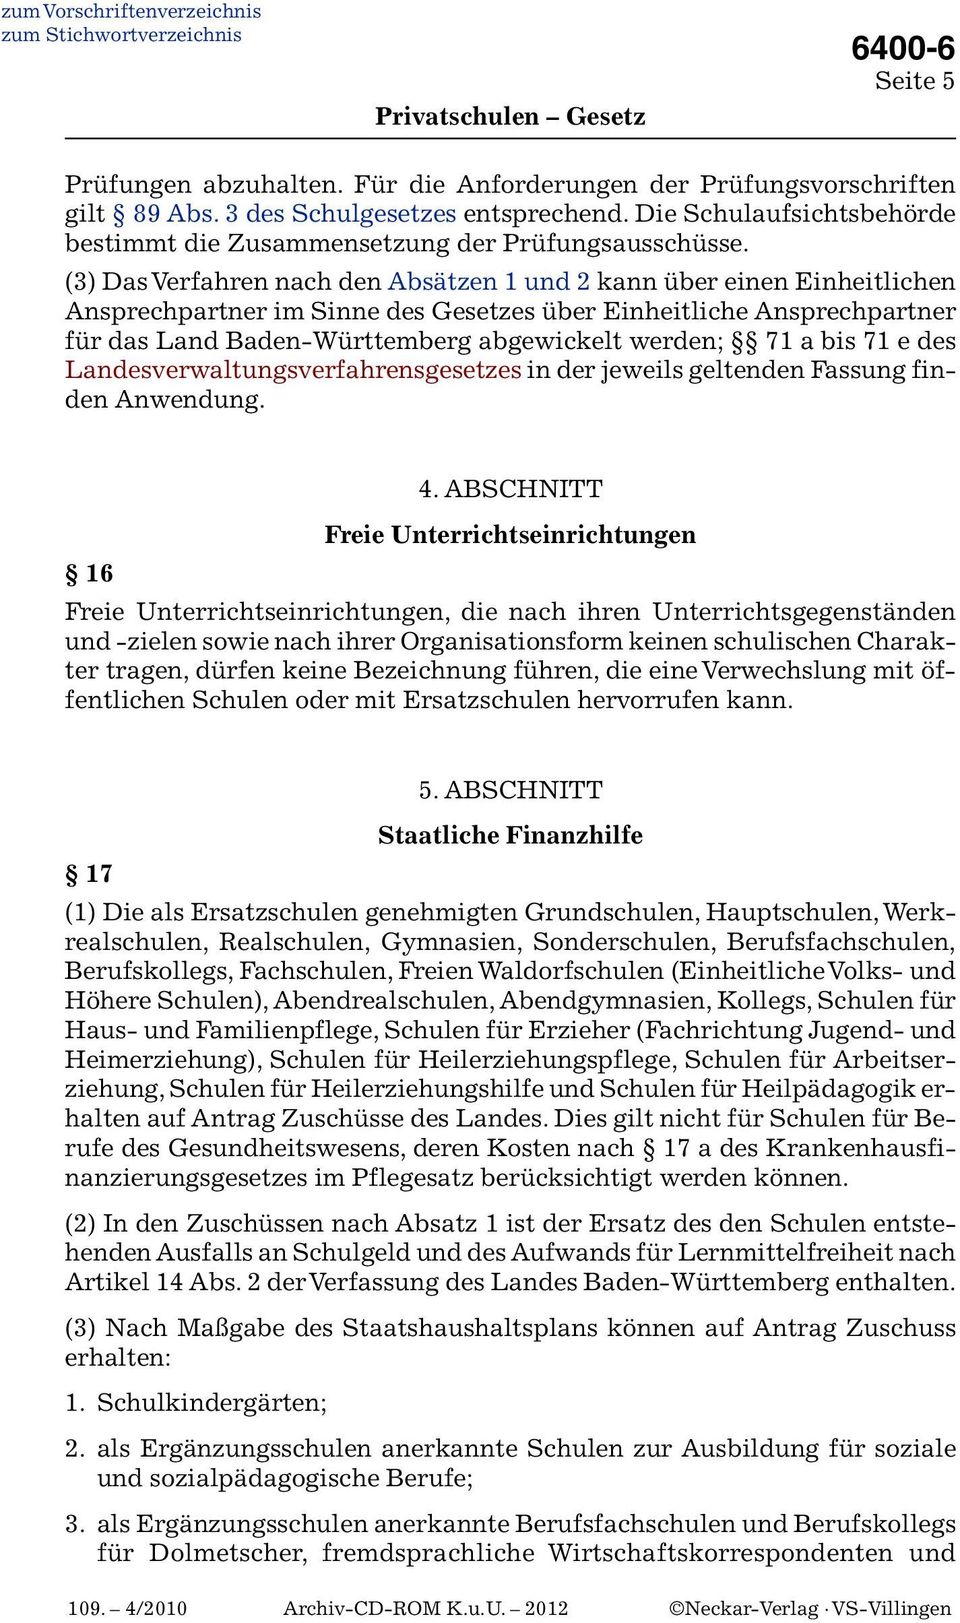 (3) Das Verfahren nach den Absätzen 1 und 2 kann über einen Einheitlichen Ansprechpartner im Sinne des Gesetzes über Einheitliche Ansprechpartner für das Land Baden-Württemberg abgewickelt werden; 71